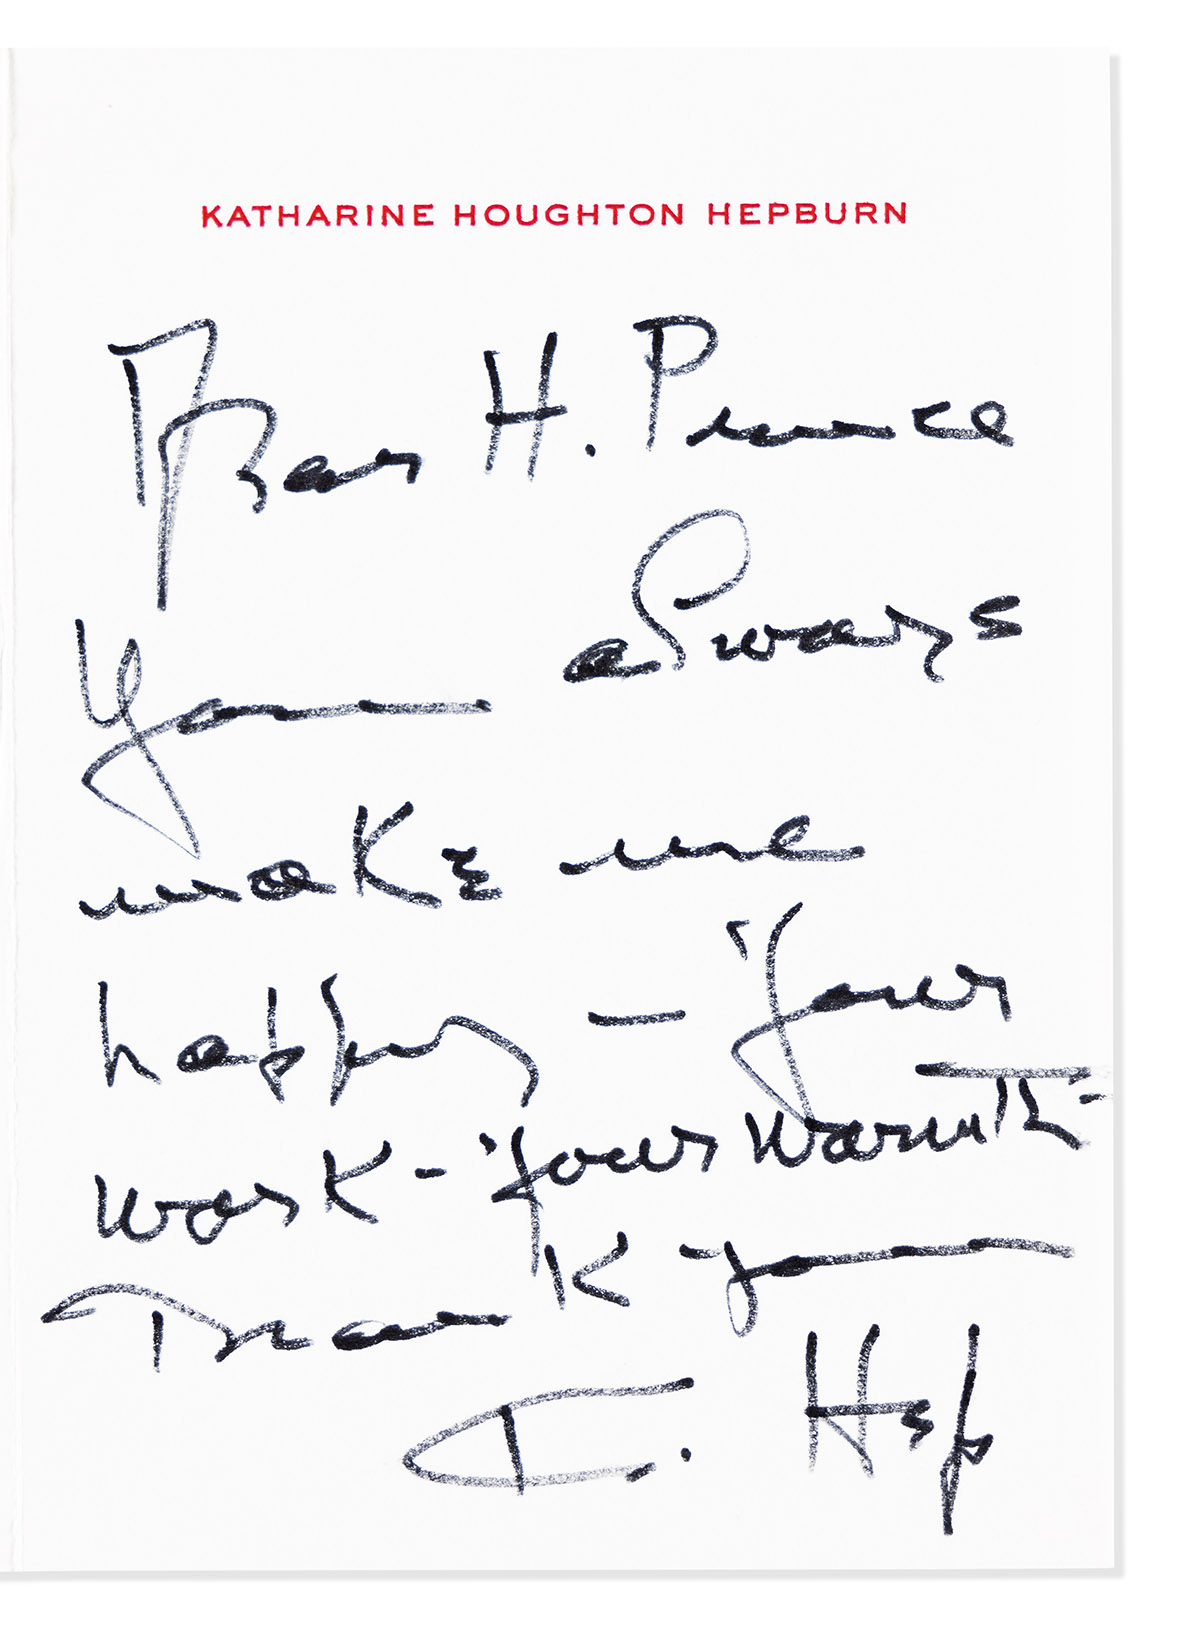 HEPBURN, KATHARINE. Autograph Letter Signed, K. Hep, to Harold Prince: